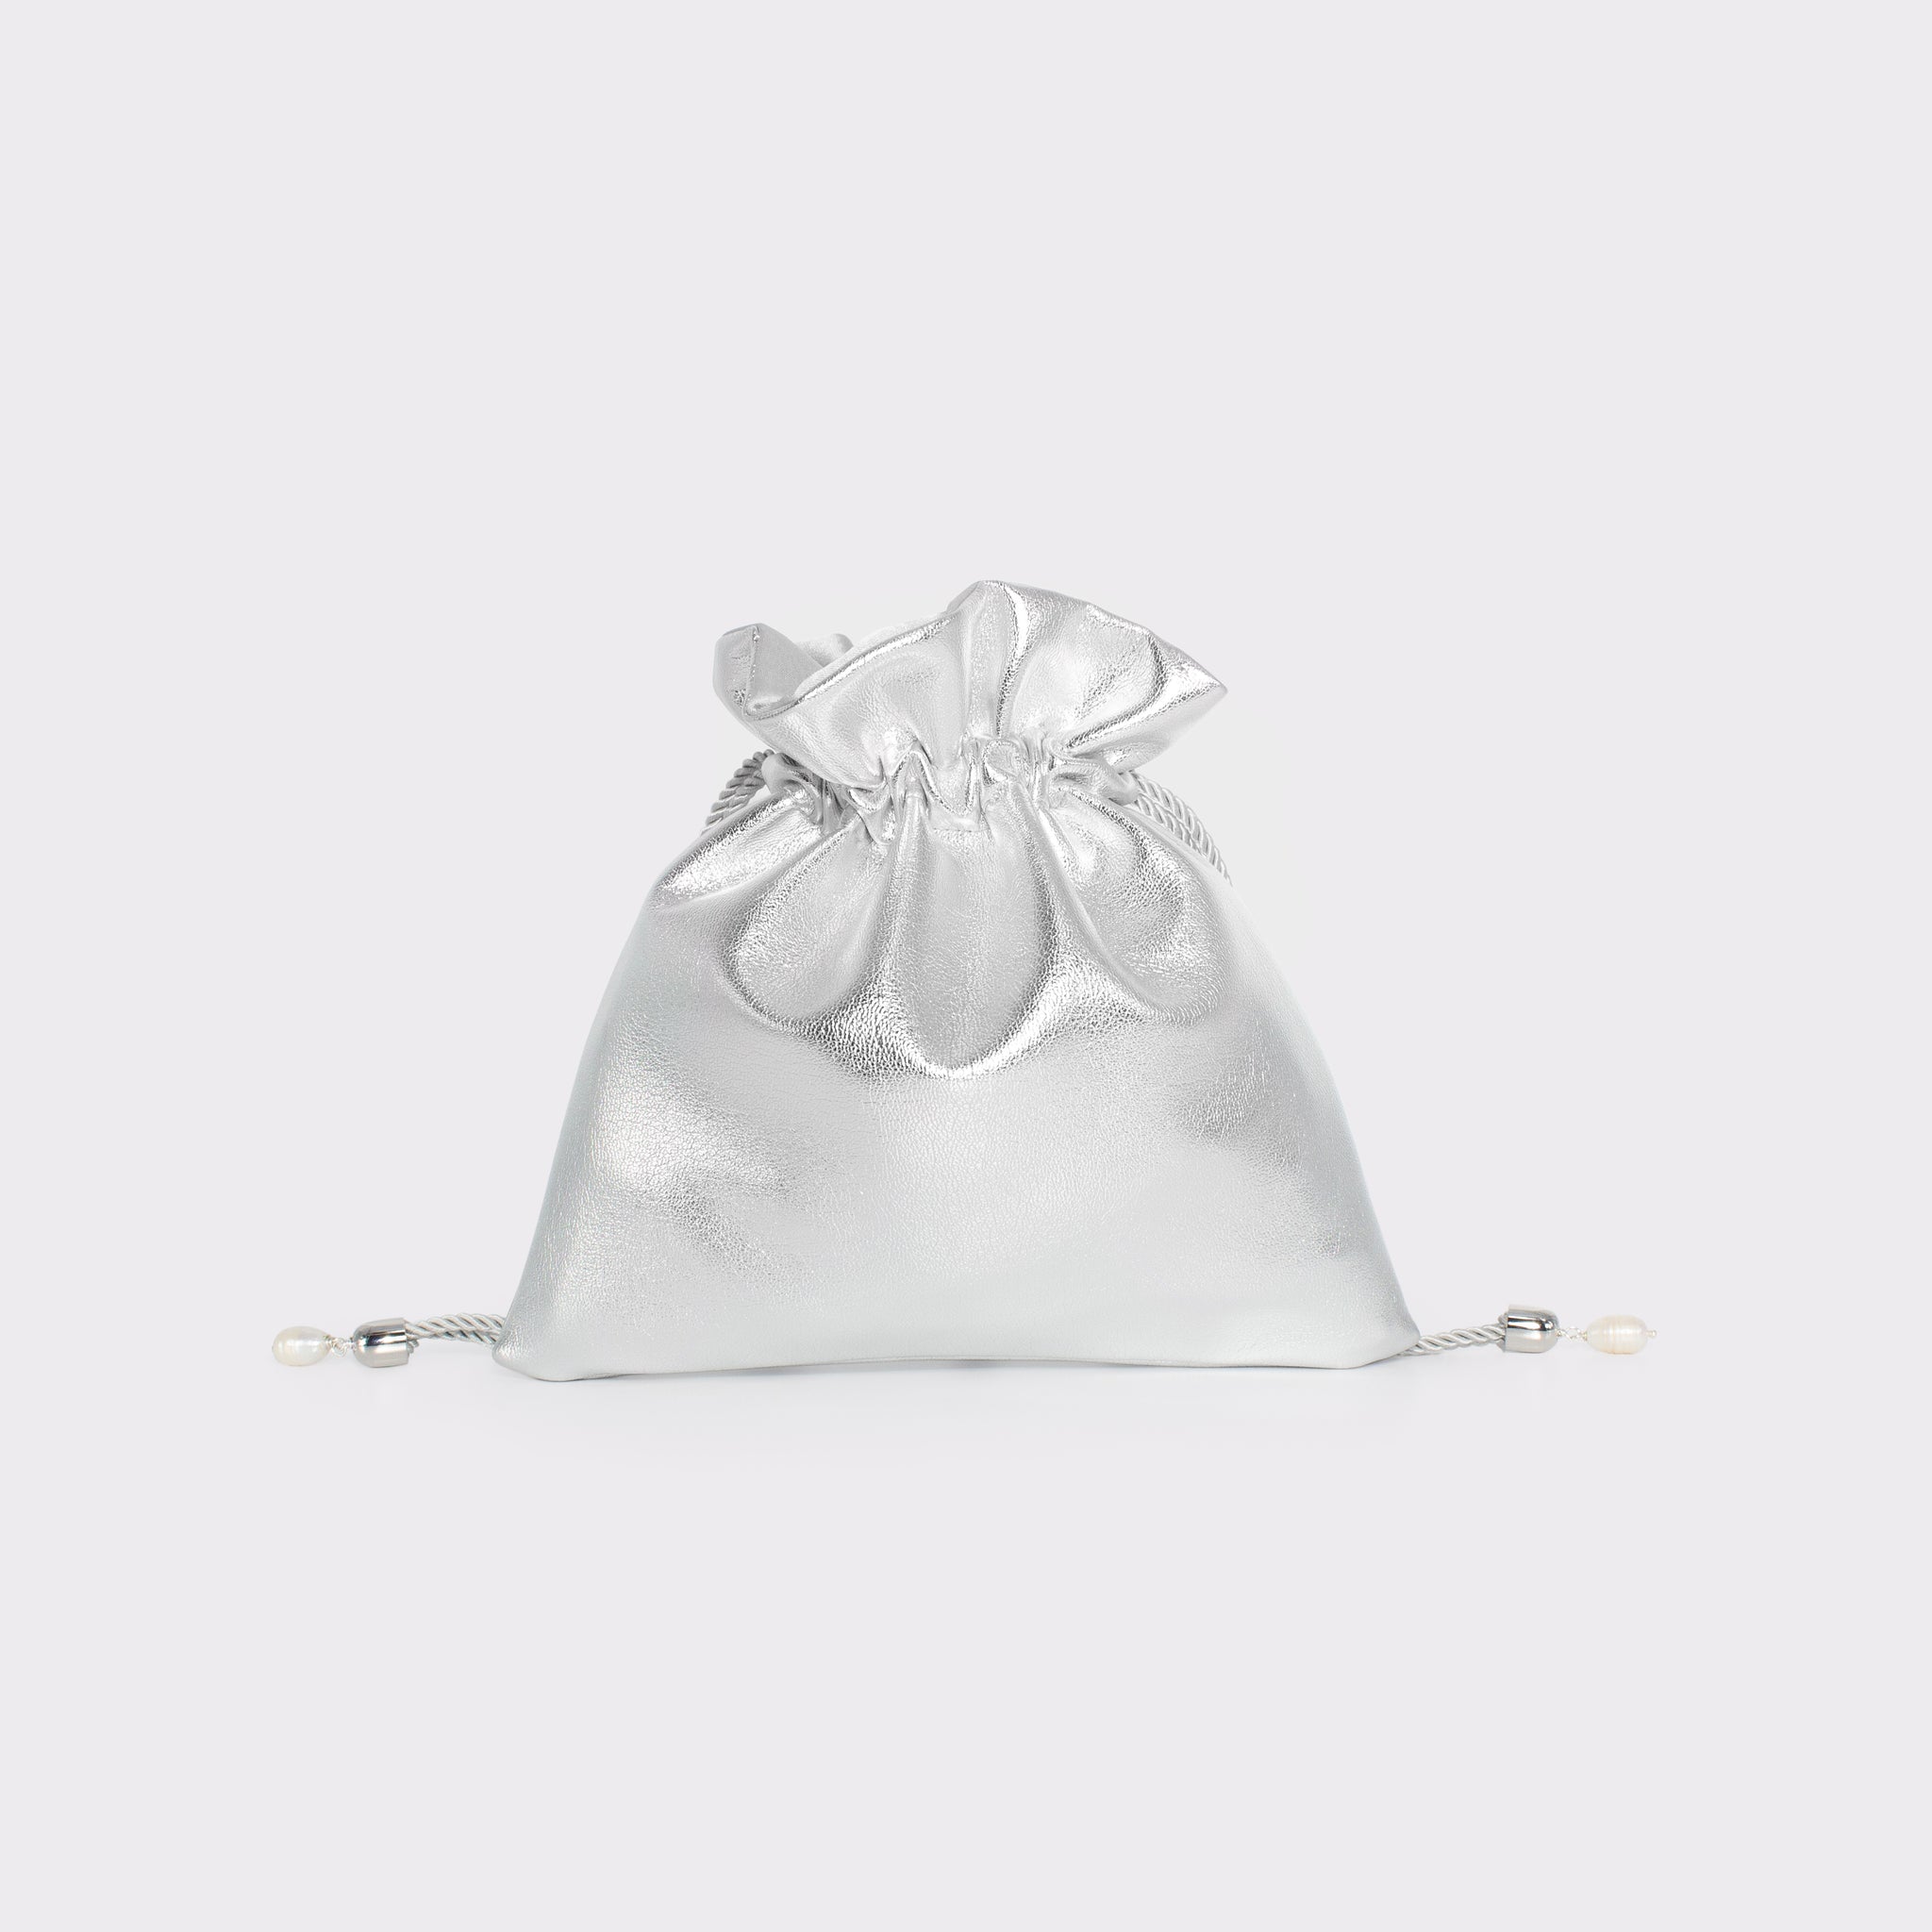 Candy bag mini in colorazione silver